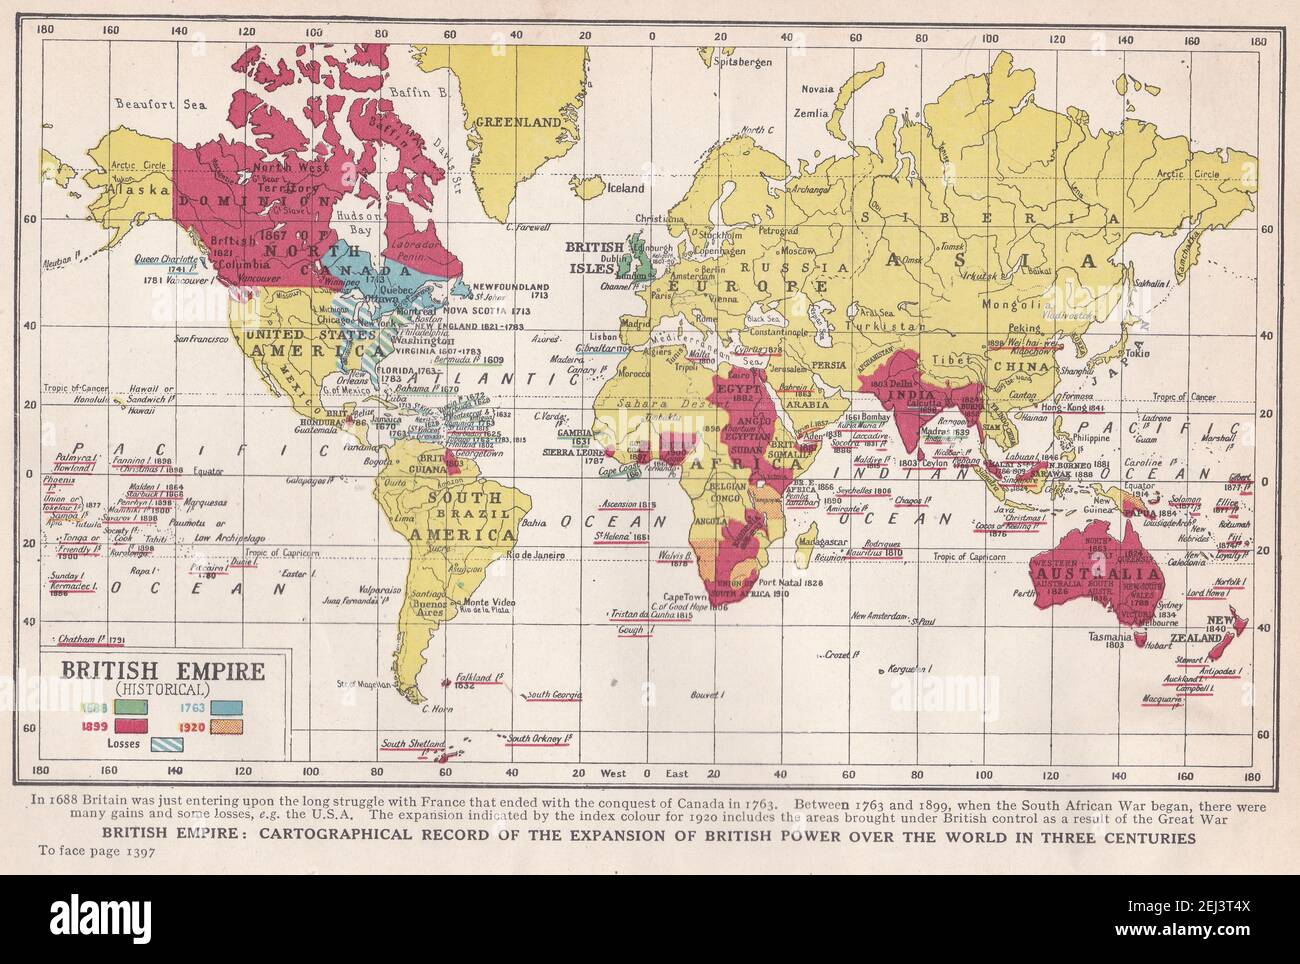 Vintage-Karte des Britischen Reiches (Historisch) - kartographische Aufzeichnung der Expansion der britischen Macht über die Welt in drei Jahrhunderten. Stockfoto